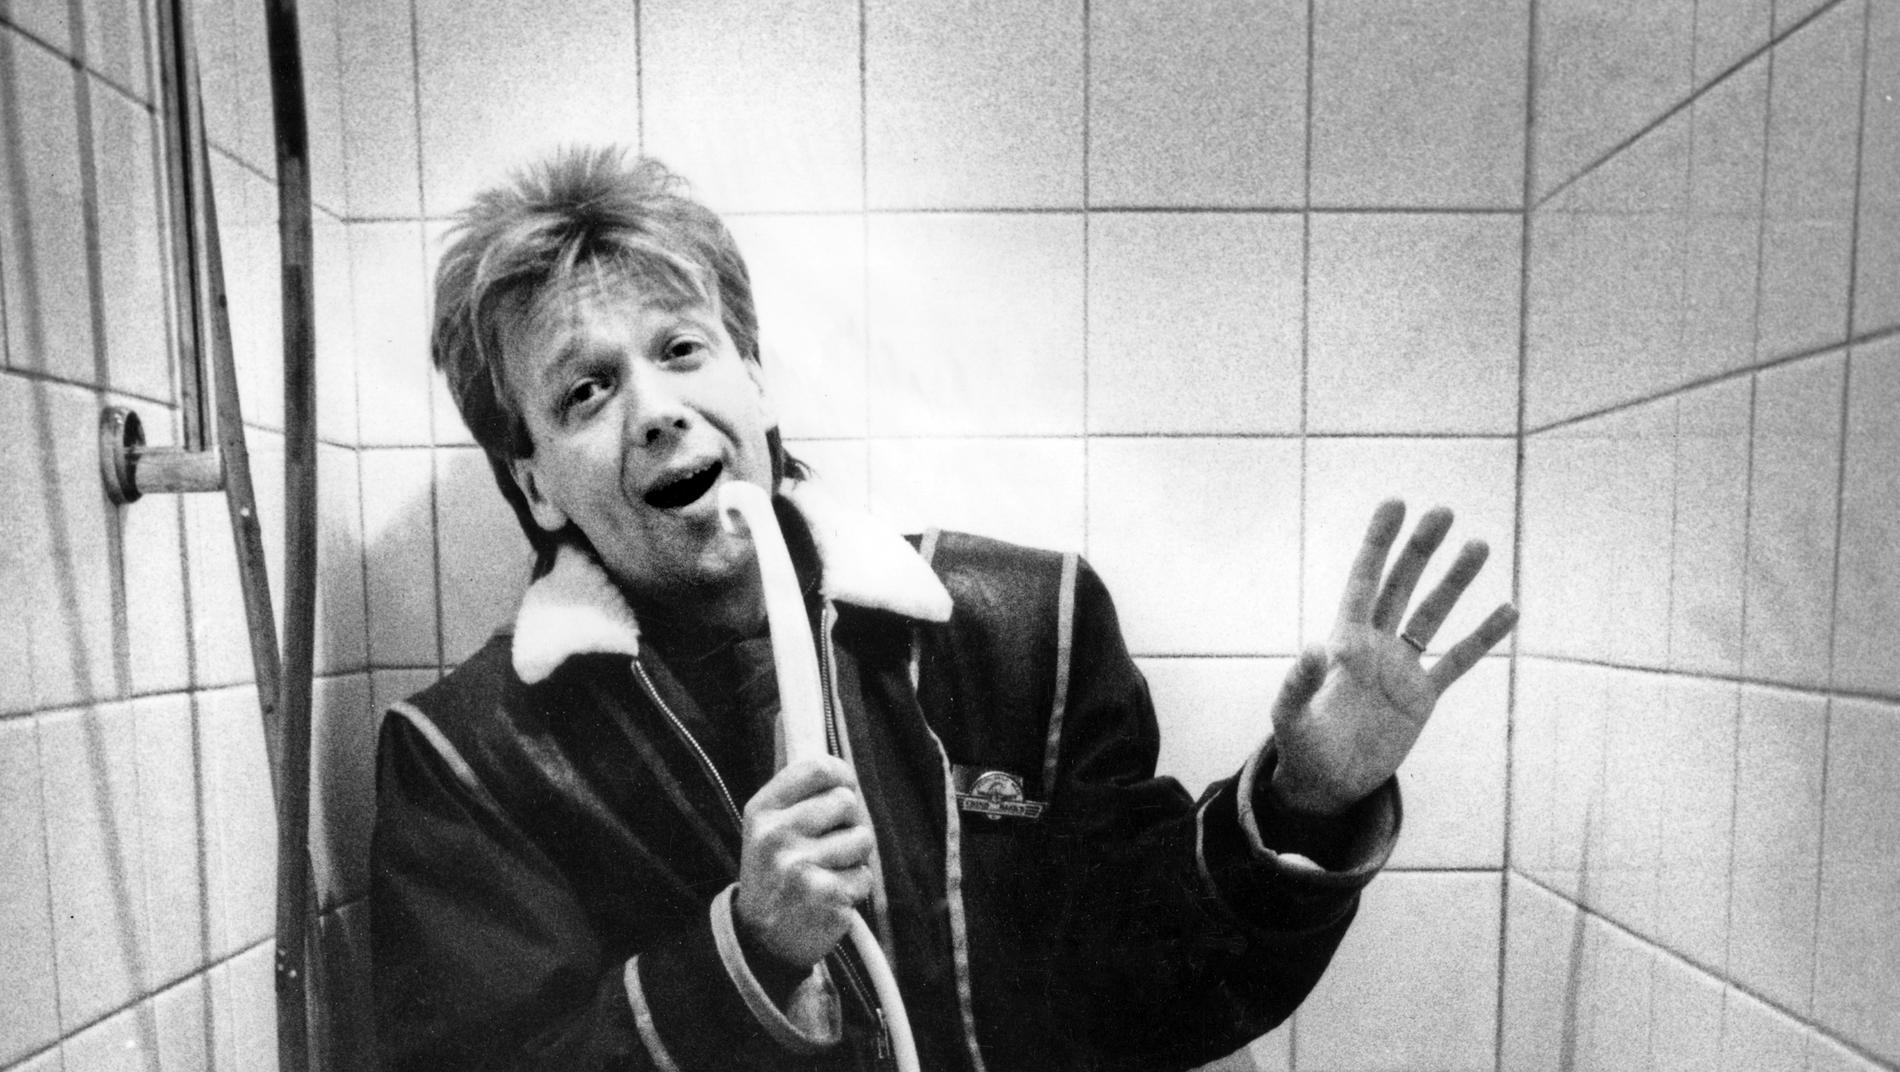 Senast Björn Skifs showade loss på den anrika nöjesscenen Hamburger Börs var 1989 i "Öman & Palm". Då sjöng han i duschen på presskonferensen inför showen. Arkivbild.